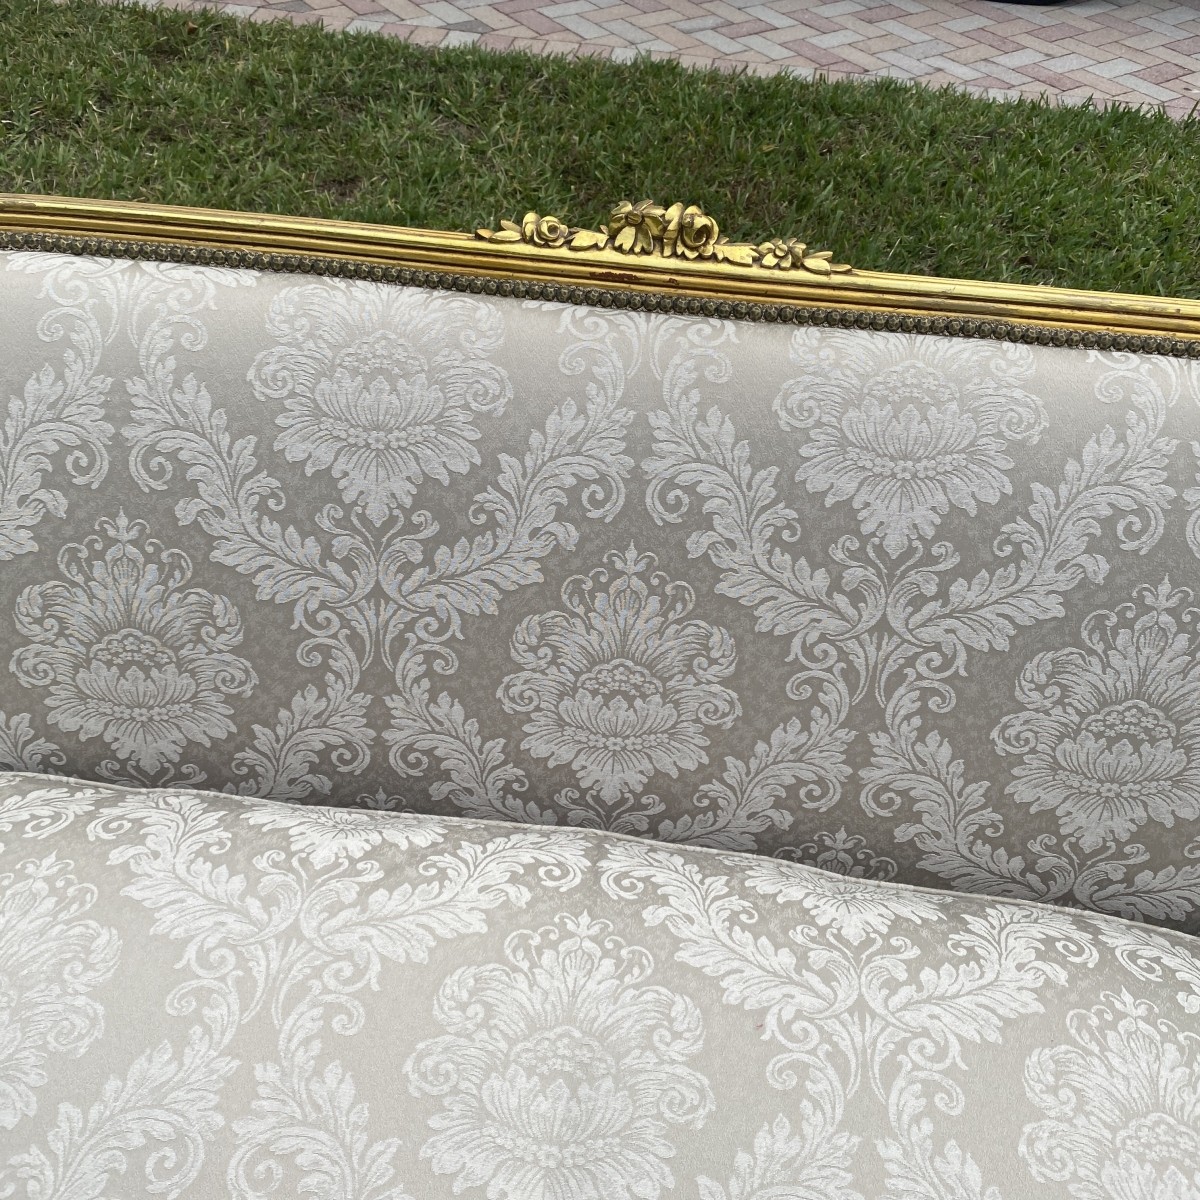 Louis XVI Style Sofa